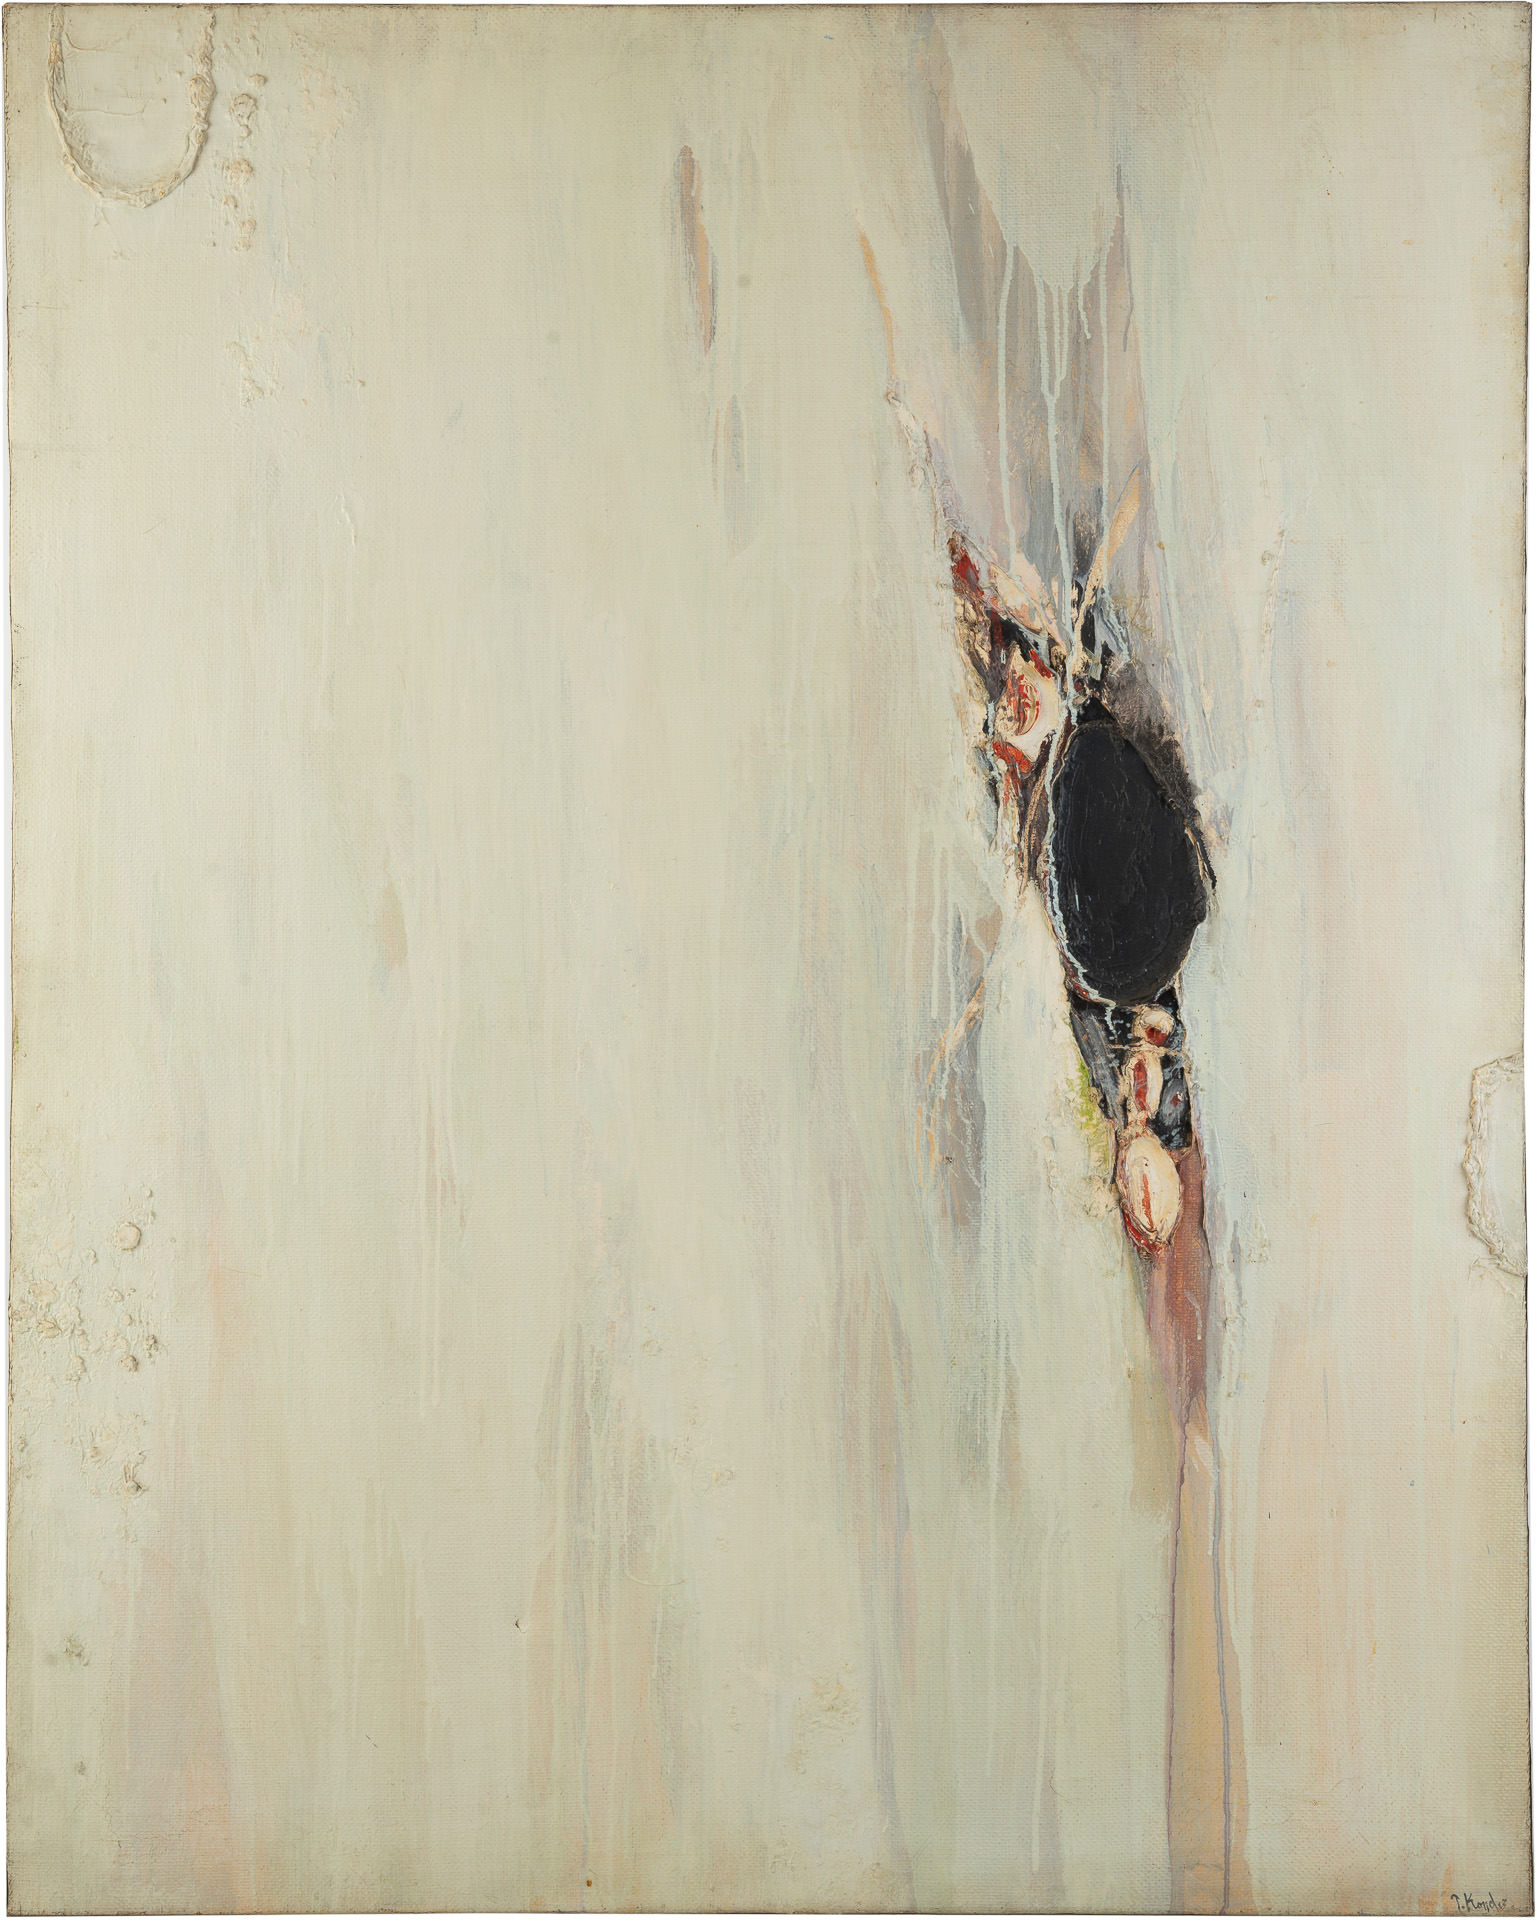 近藤竜男〈Untitled〉, 油彩・カンヴァス, 127.0×102.2, エミリー・ロウ受賞展, 1961